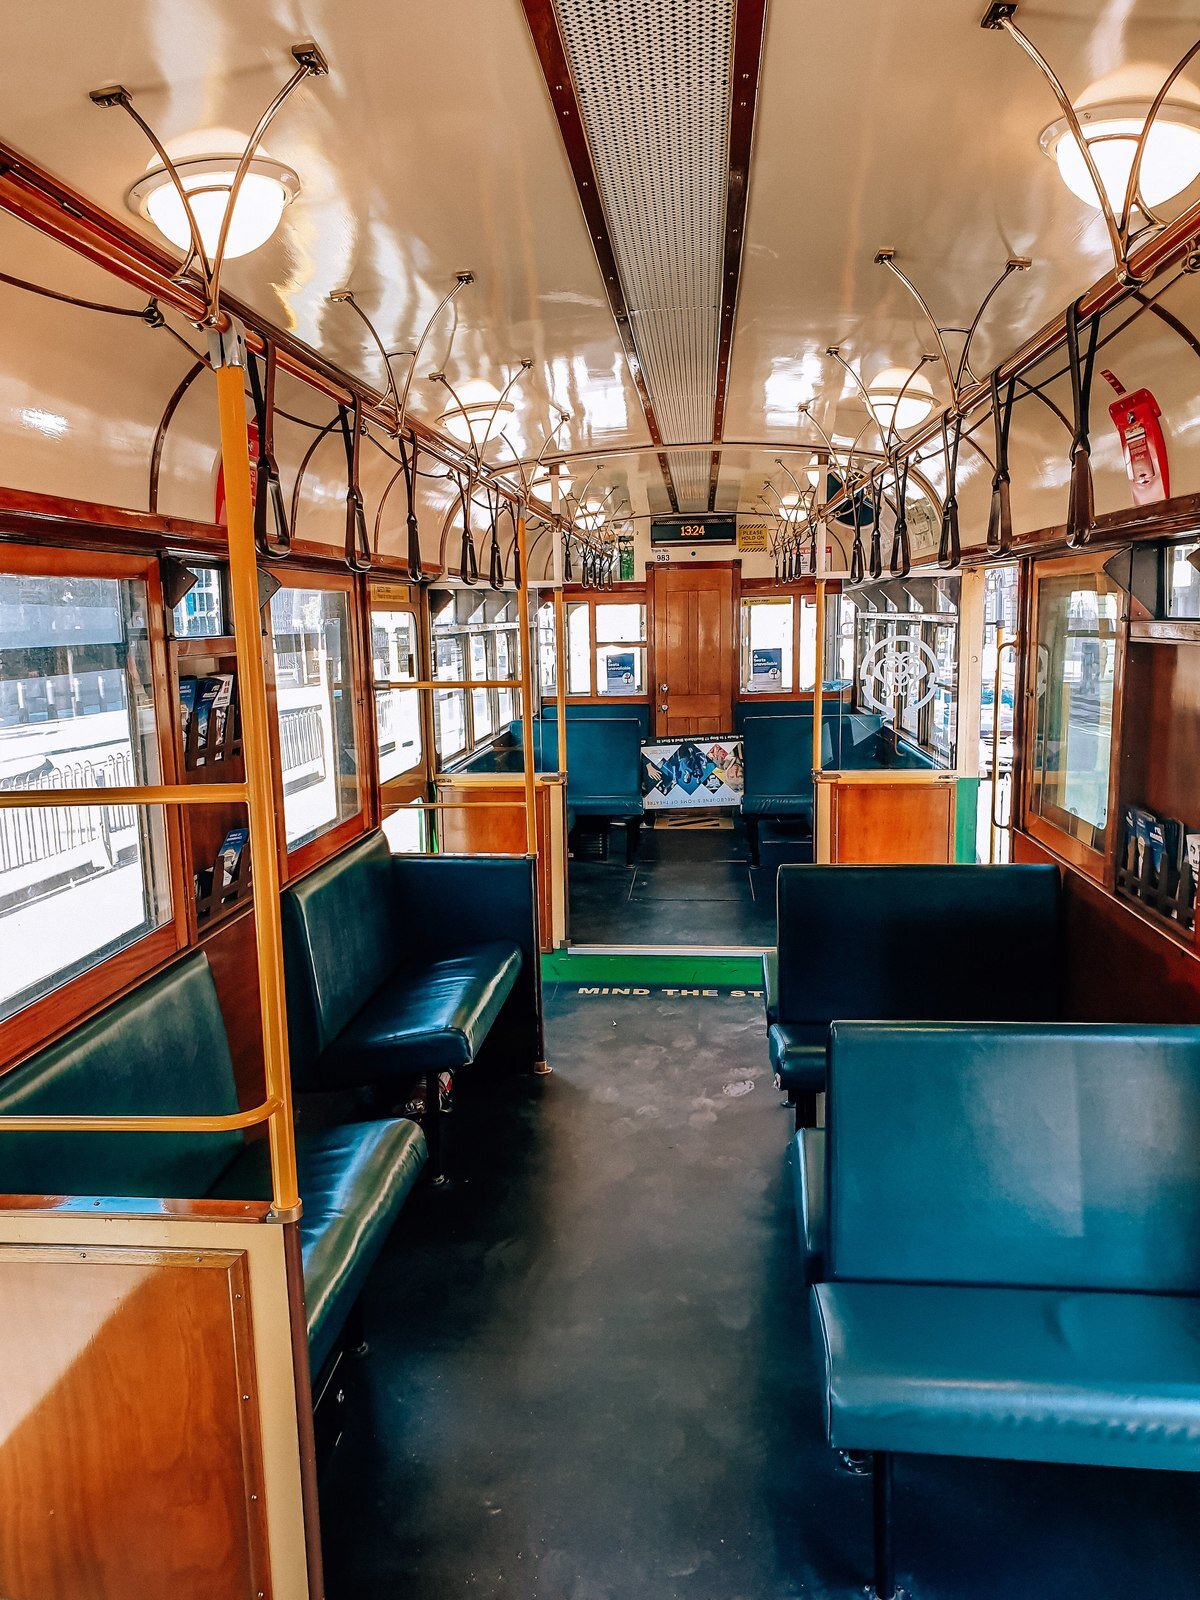 Inside Melbourne's heritage trams